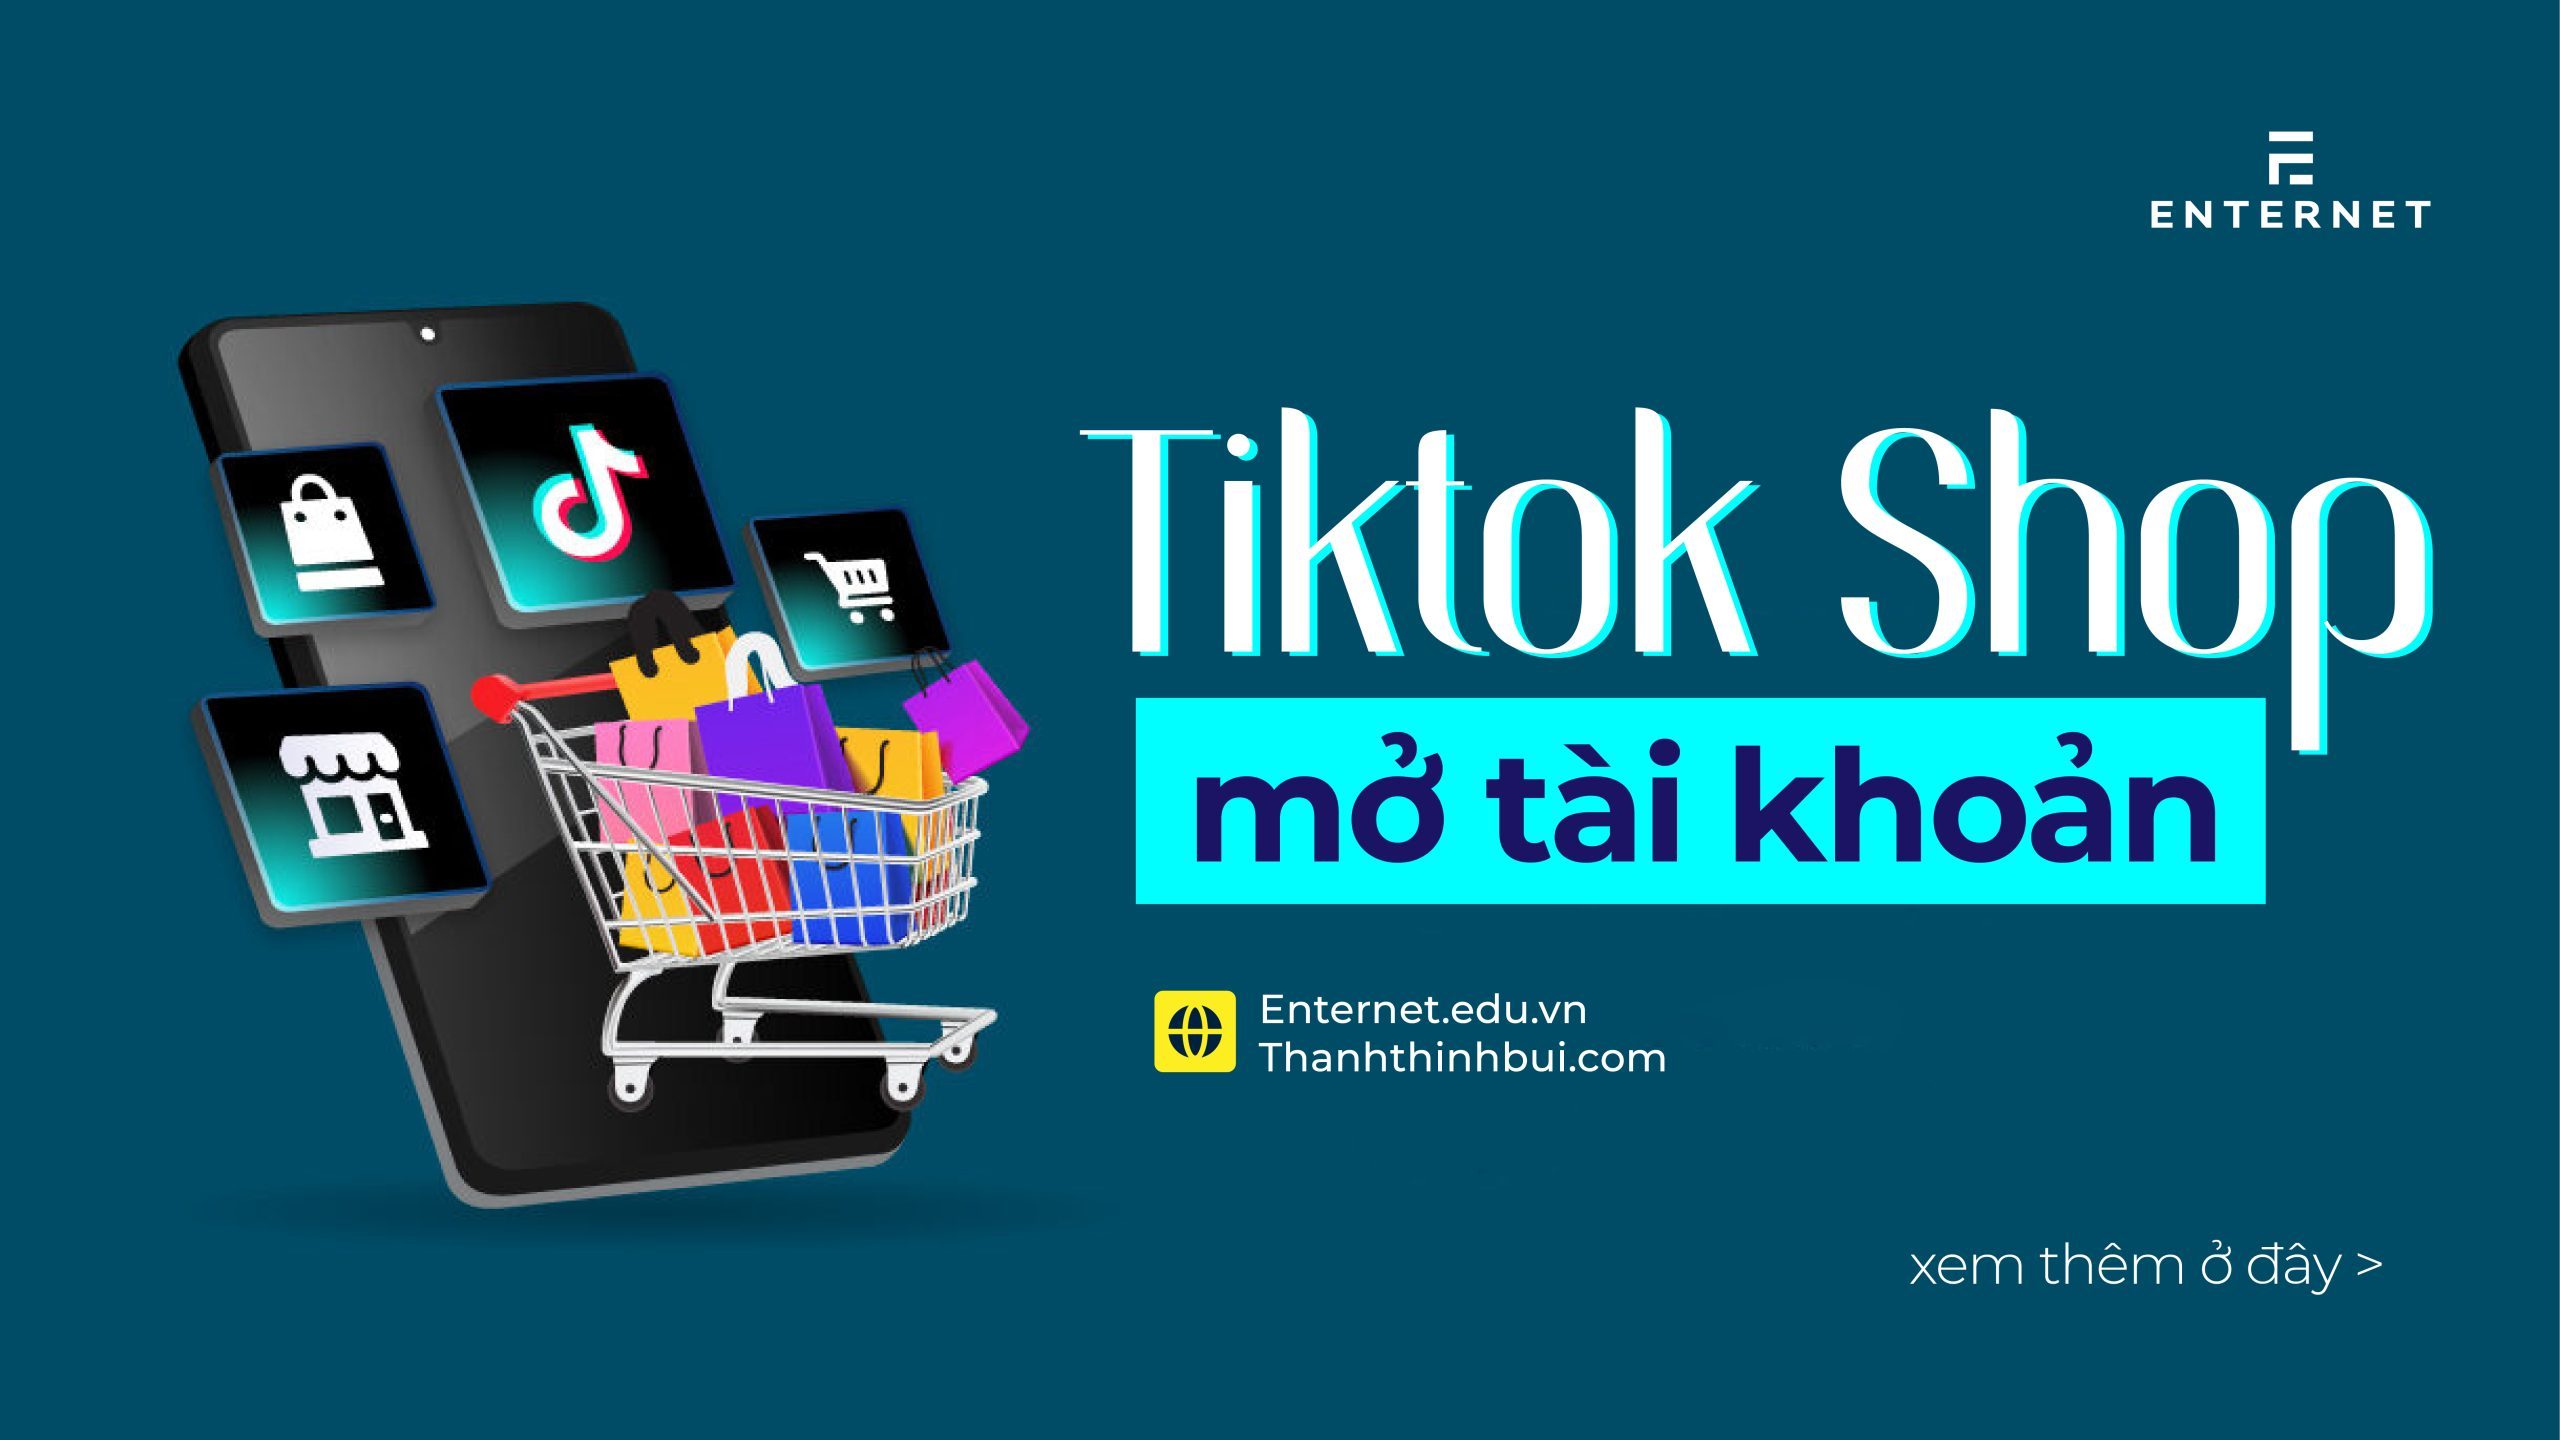 Tiktok Shop là gì? Mở quầy hàng Tiktok Shop rất rất giản dị 2022 